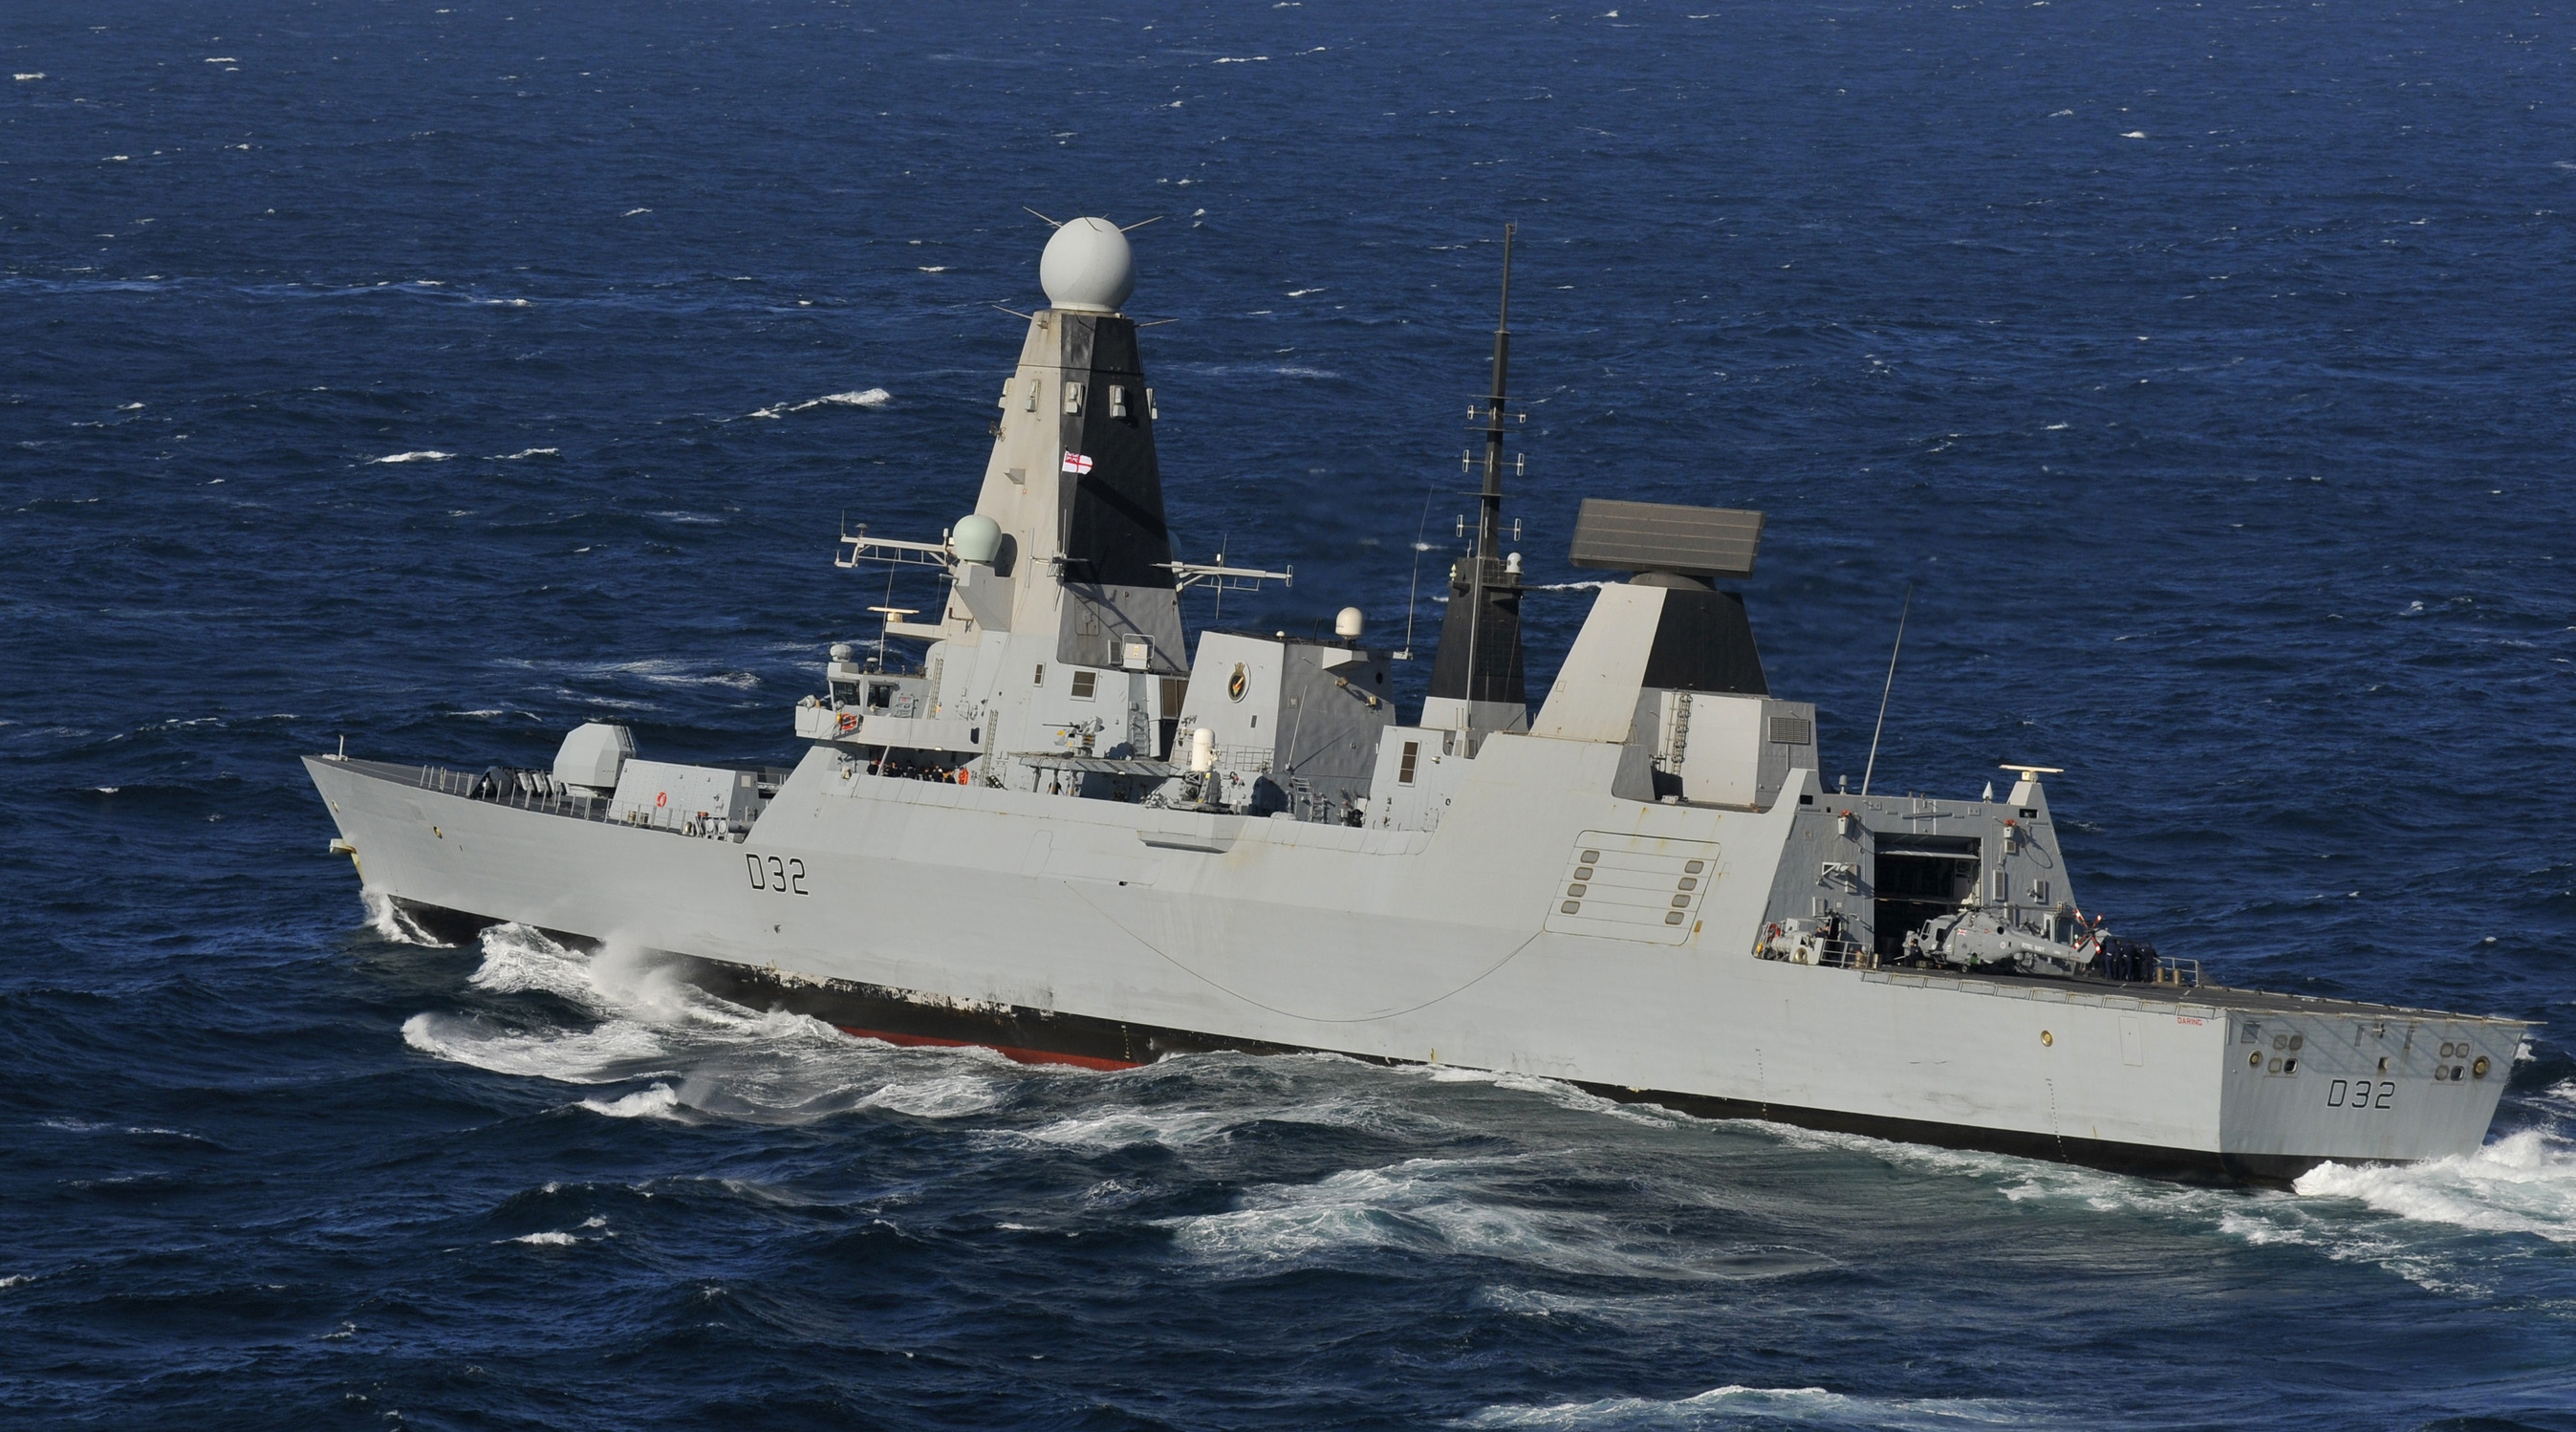 HMS Daring (D32) Backgrounds, Compatible - PC, Mobile, Gadgets| 2695x1498 px